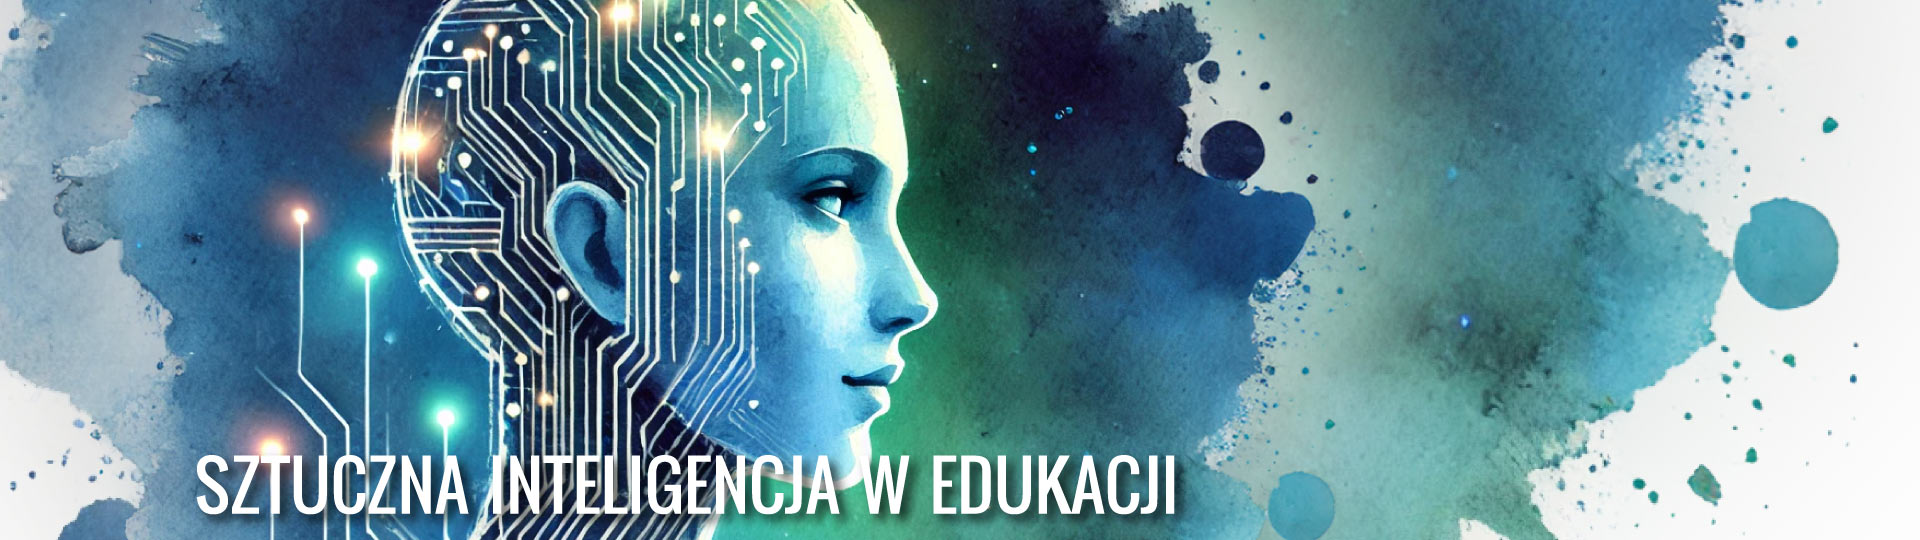 Sztuczna inteligencja w edukacji